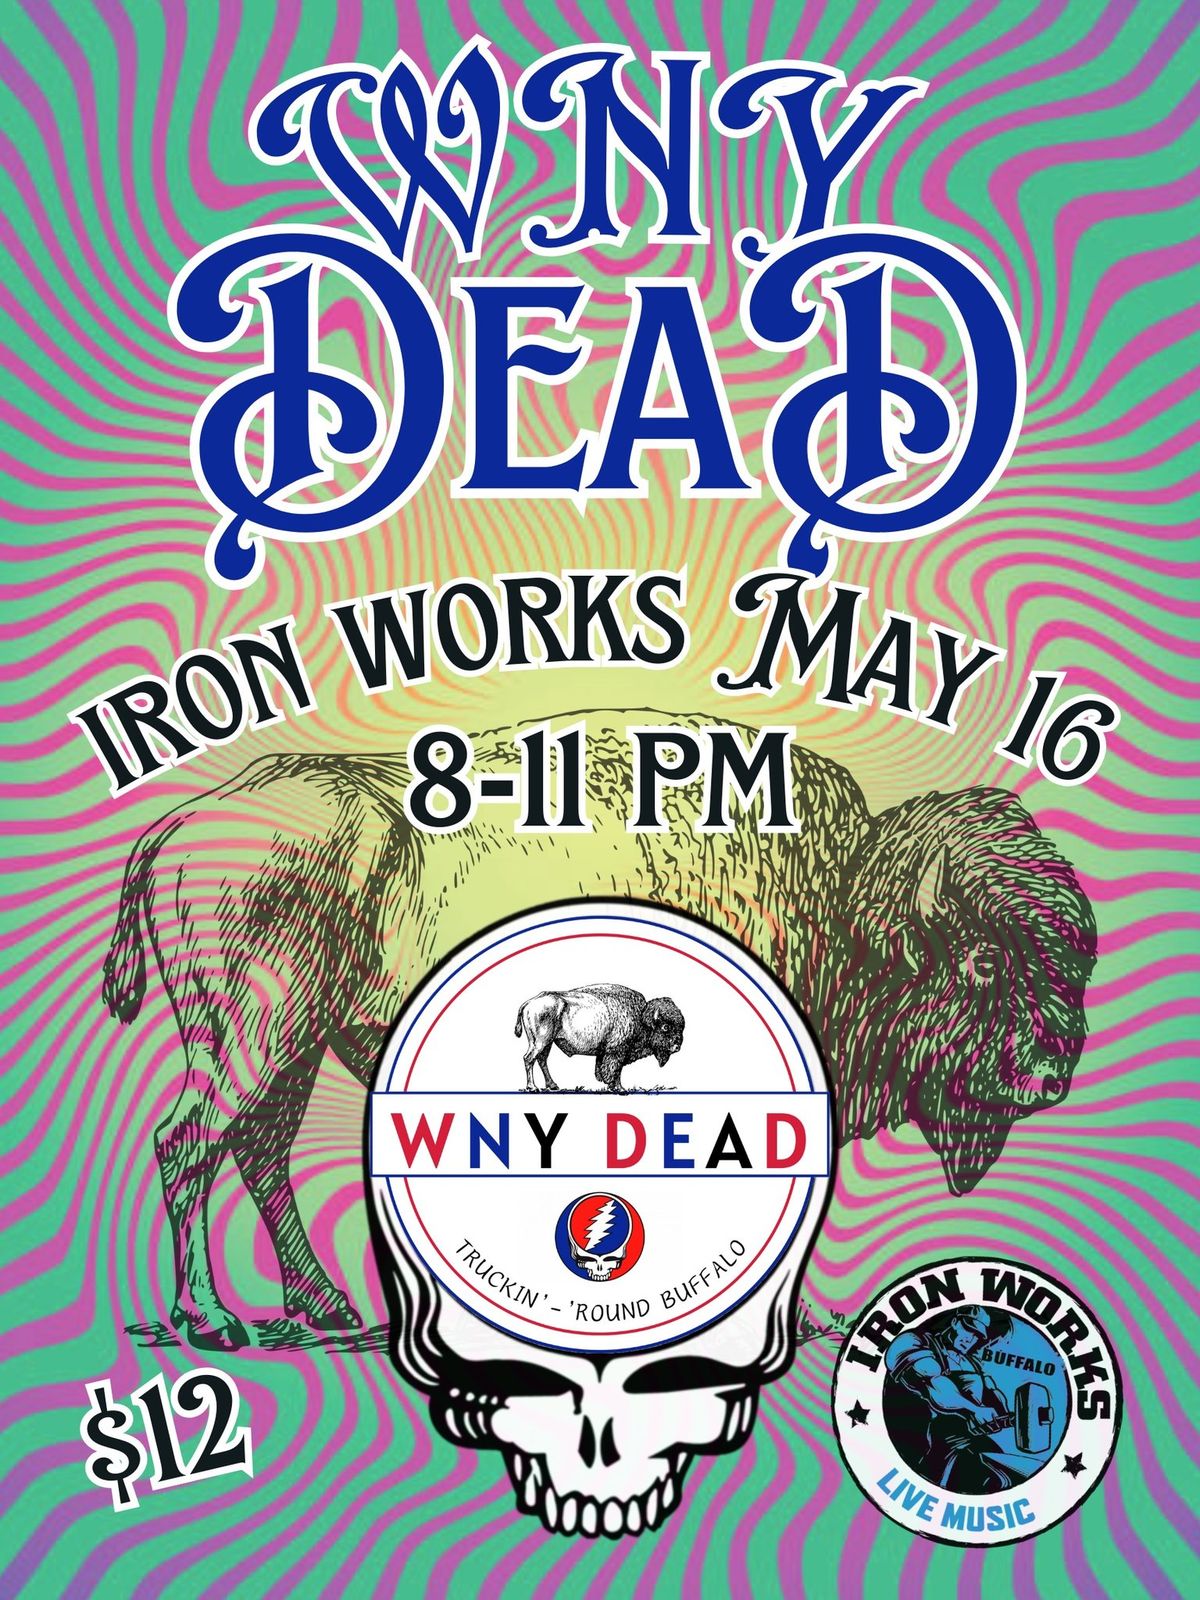 WNY Dead at Buffalo Iron Works | May 16